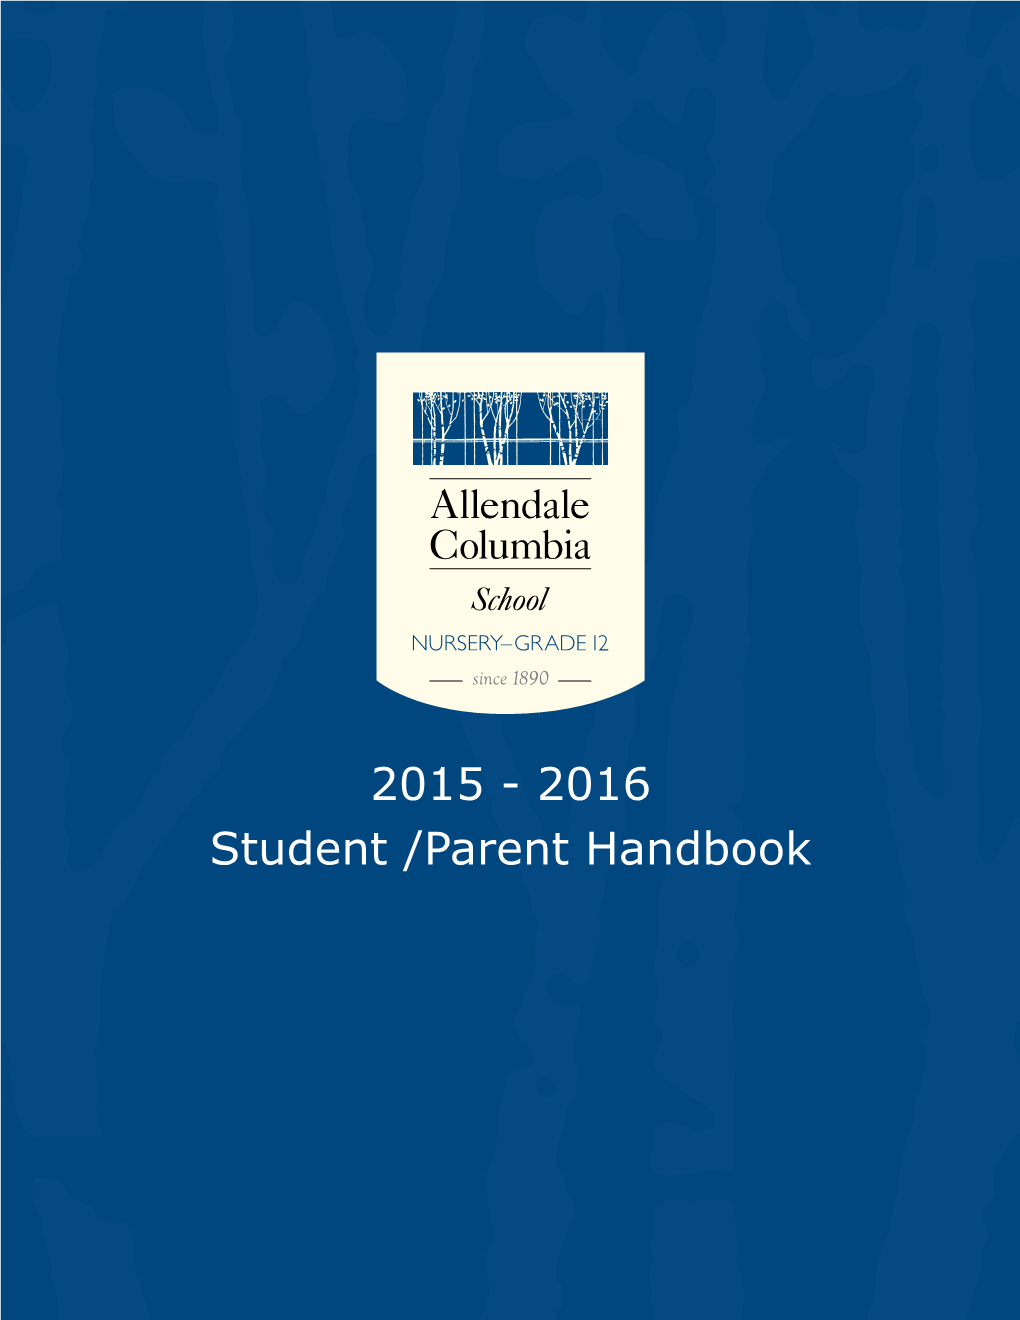 2015-2016 Allendale Columbia School Student Parent Handbook